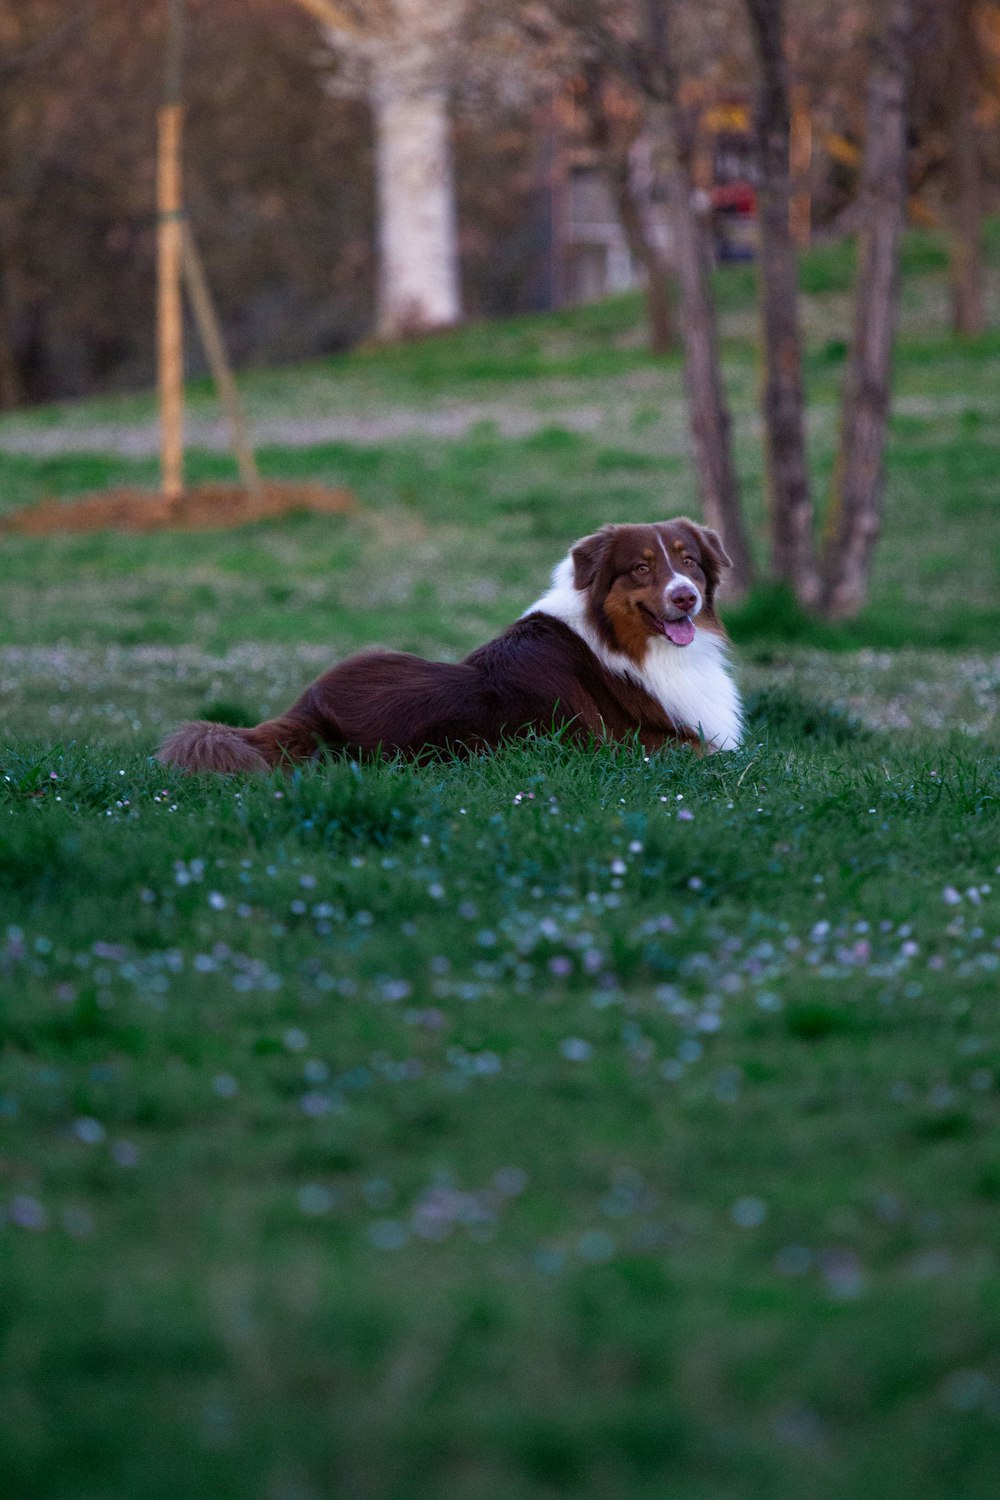 무성한 녹색 들판 위에 누워있는 갈색과 흰색 개